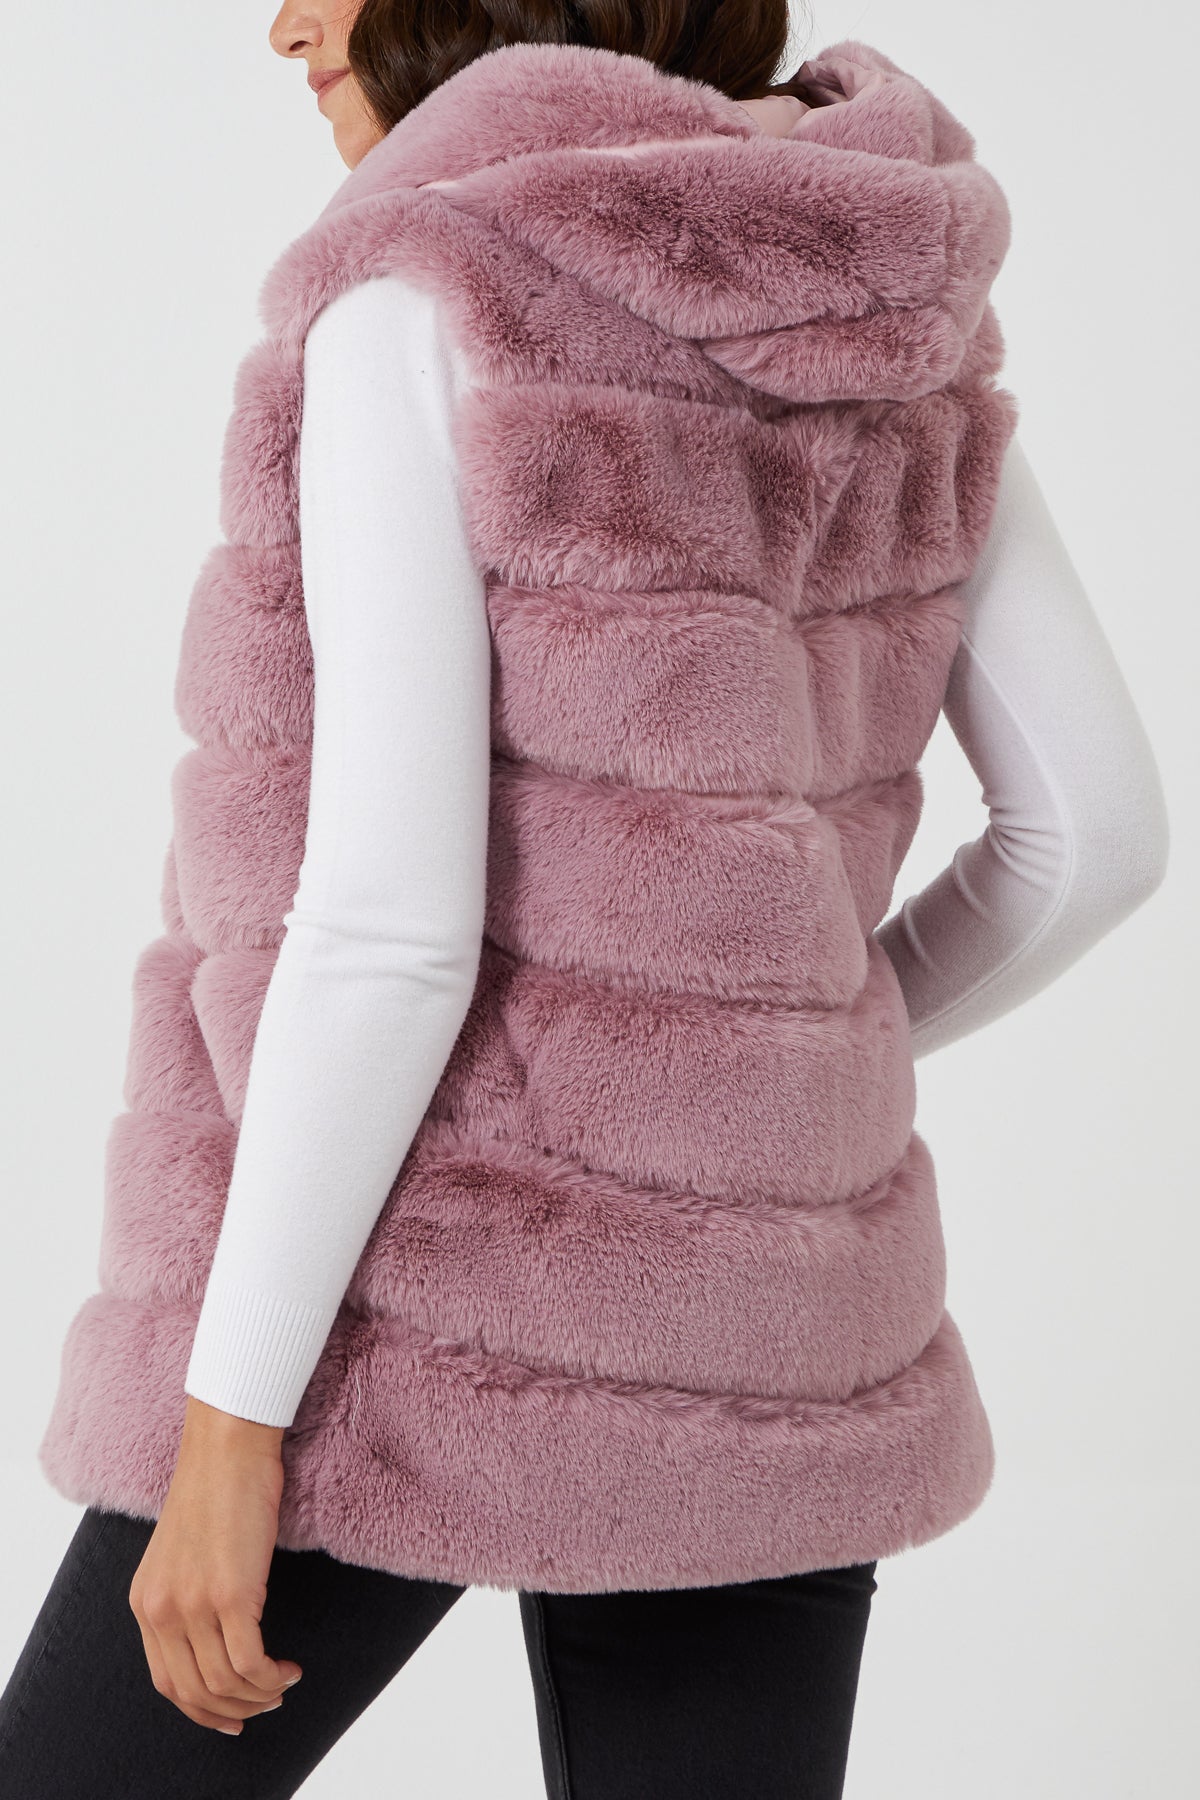 Jackets & Coats, Gymboree Pink L 112 Faux Fur Hooded Vest Great Shape